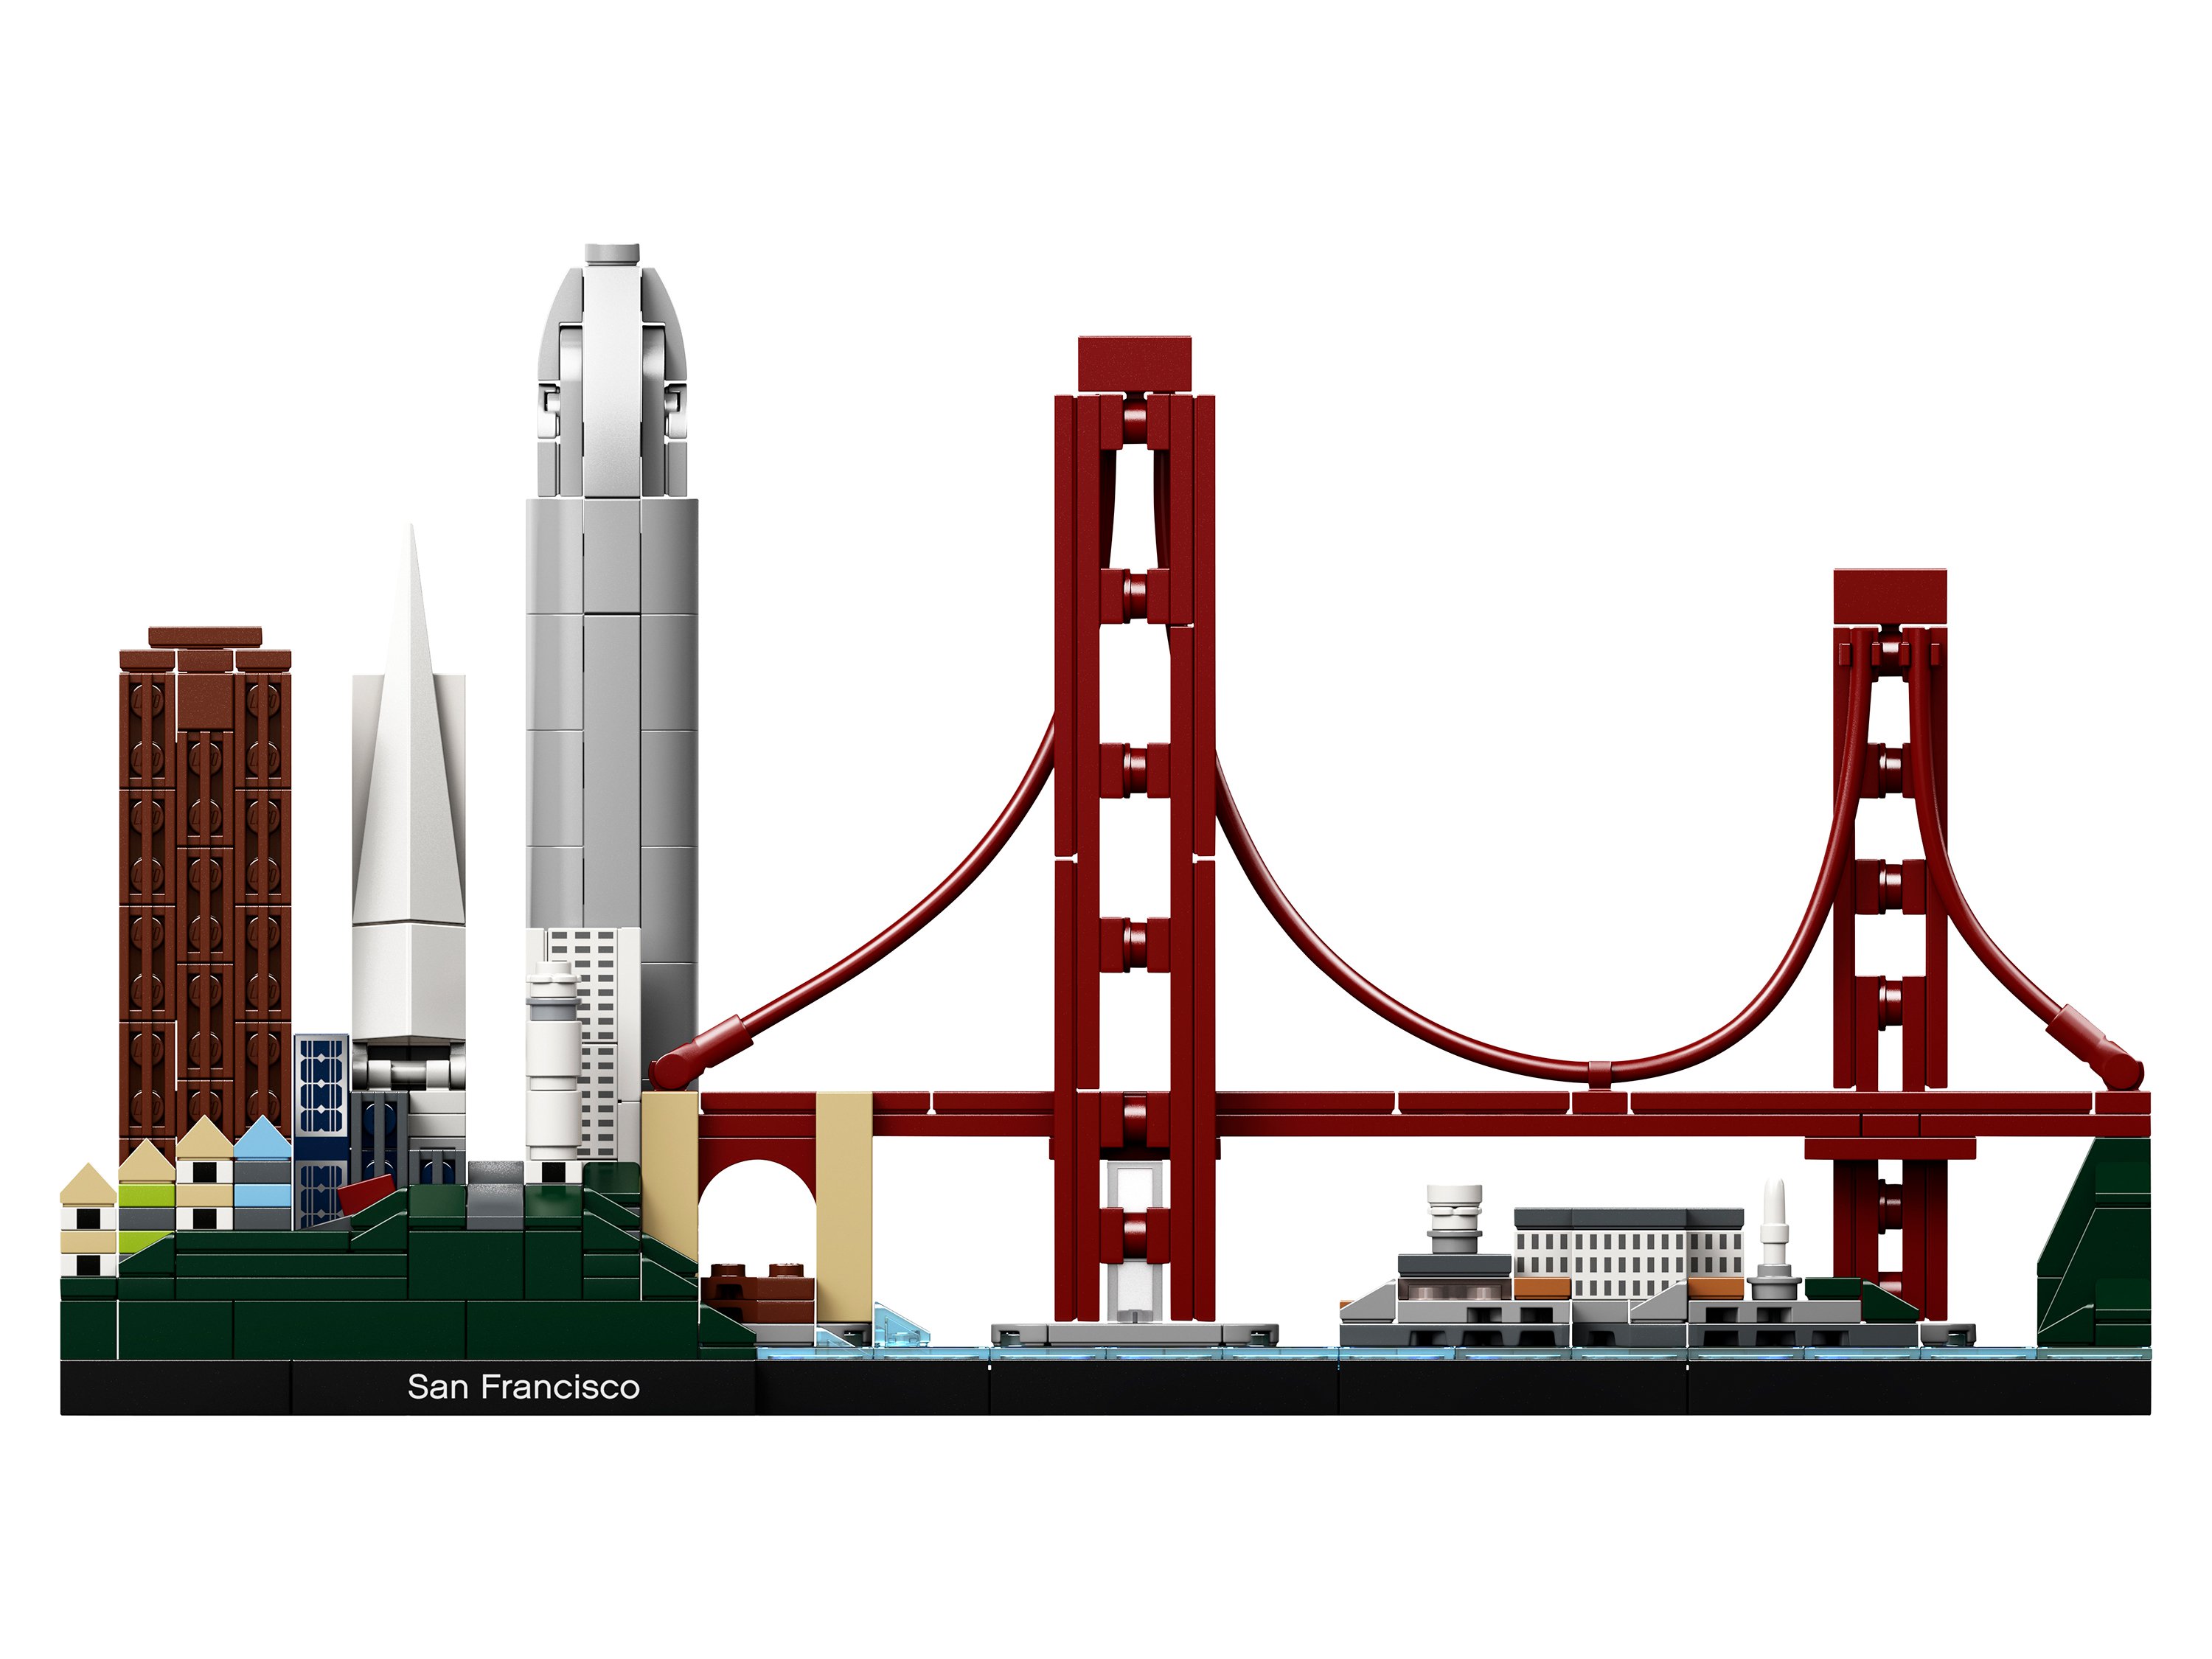 Lego Architecture 21043 Сан-Франциско